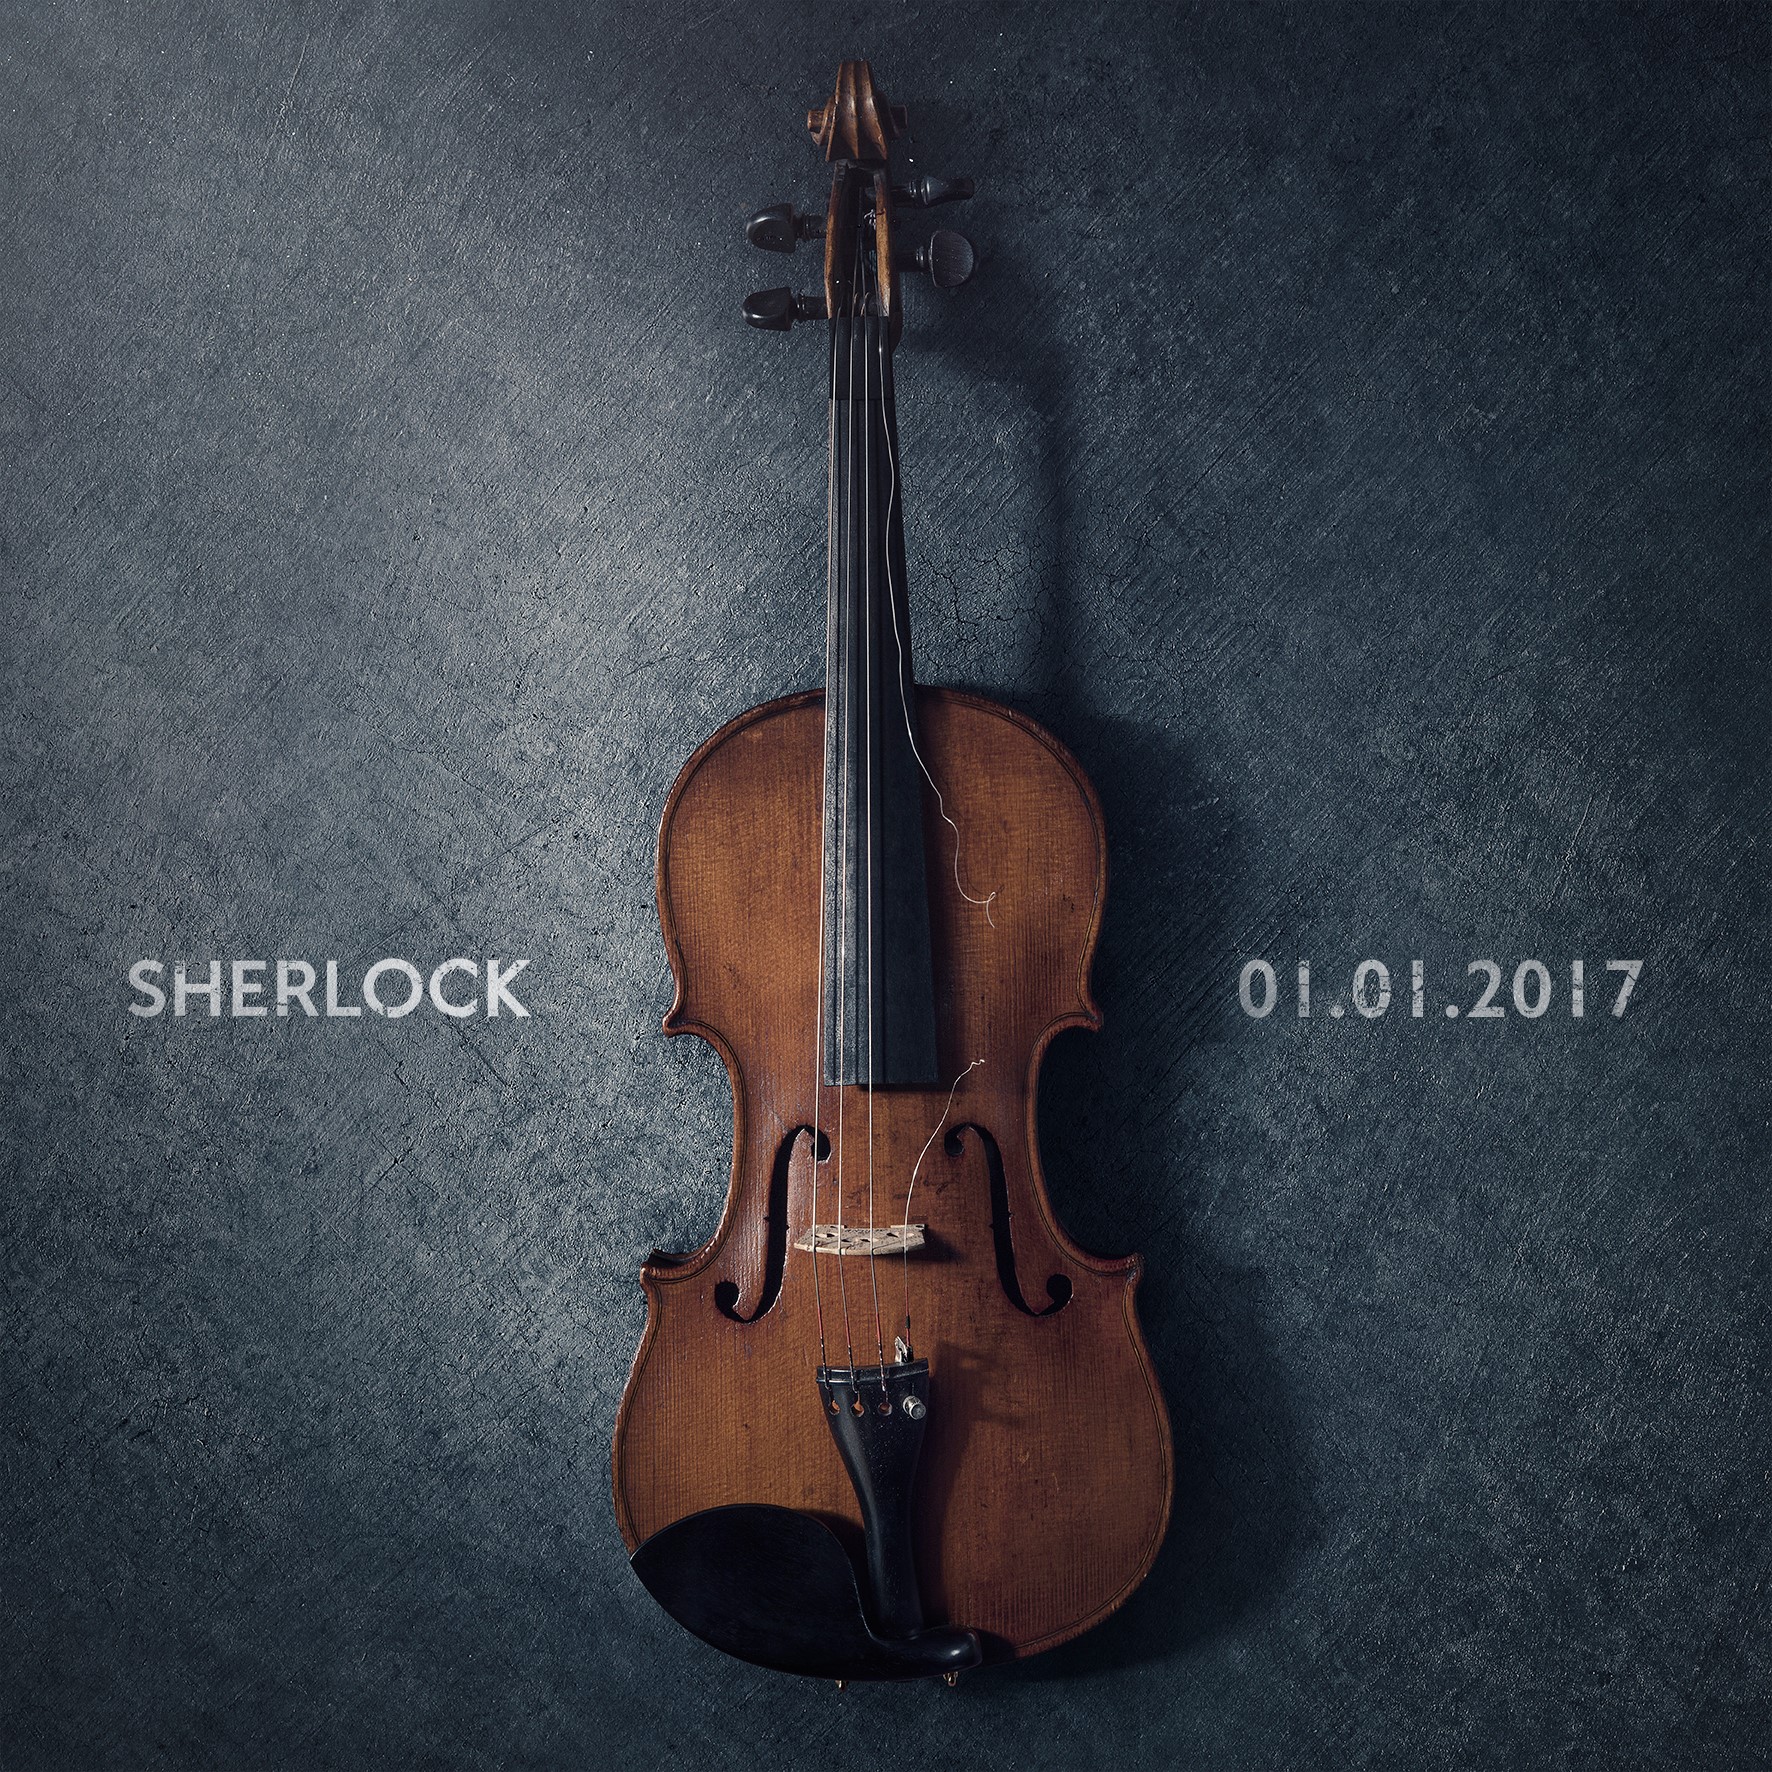 Sherlock Return Date Announced